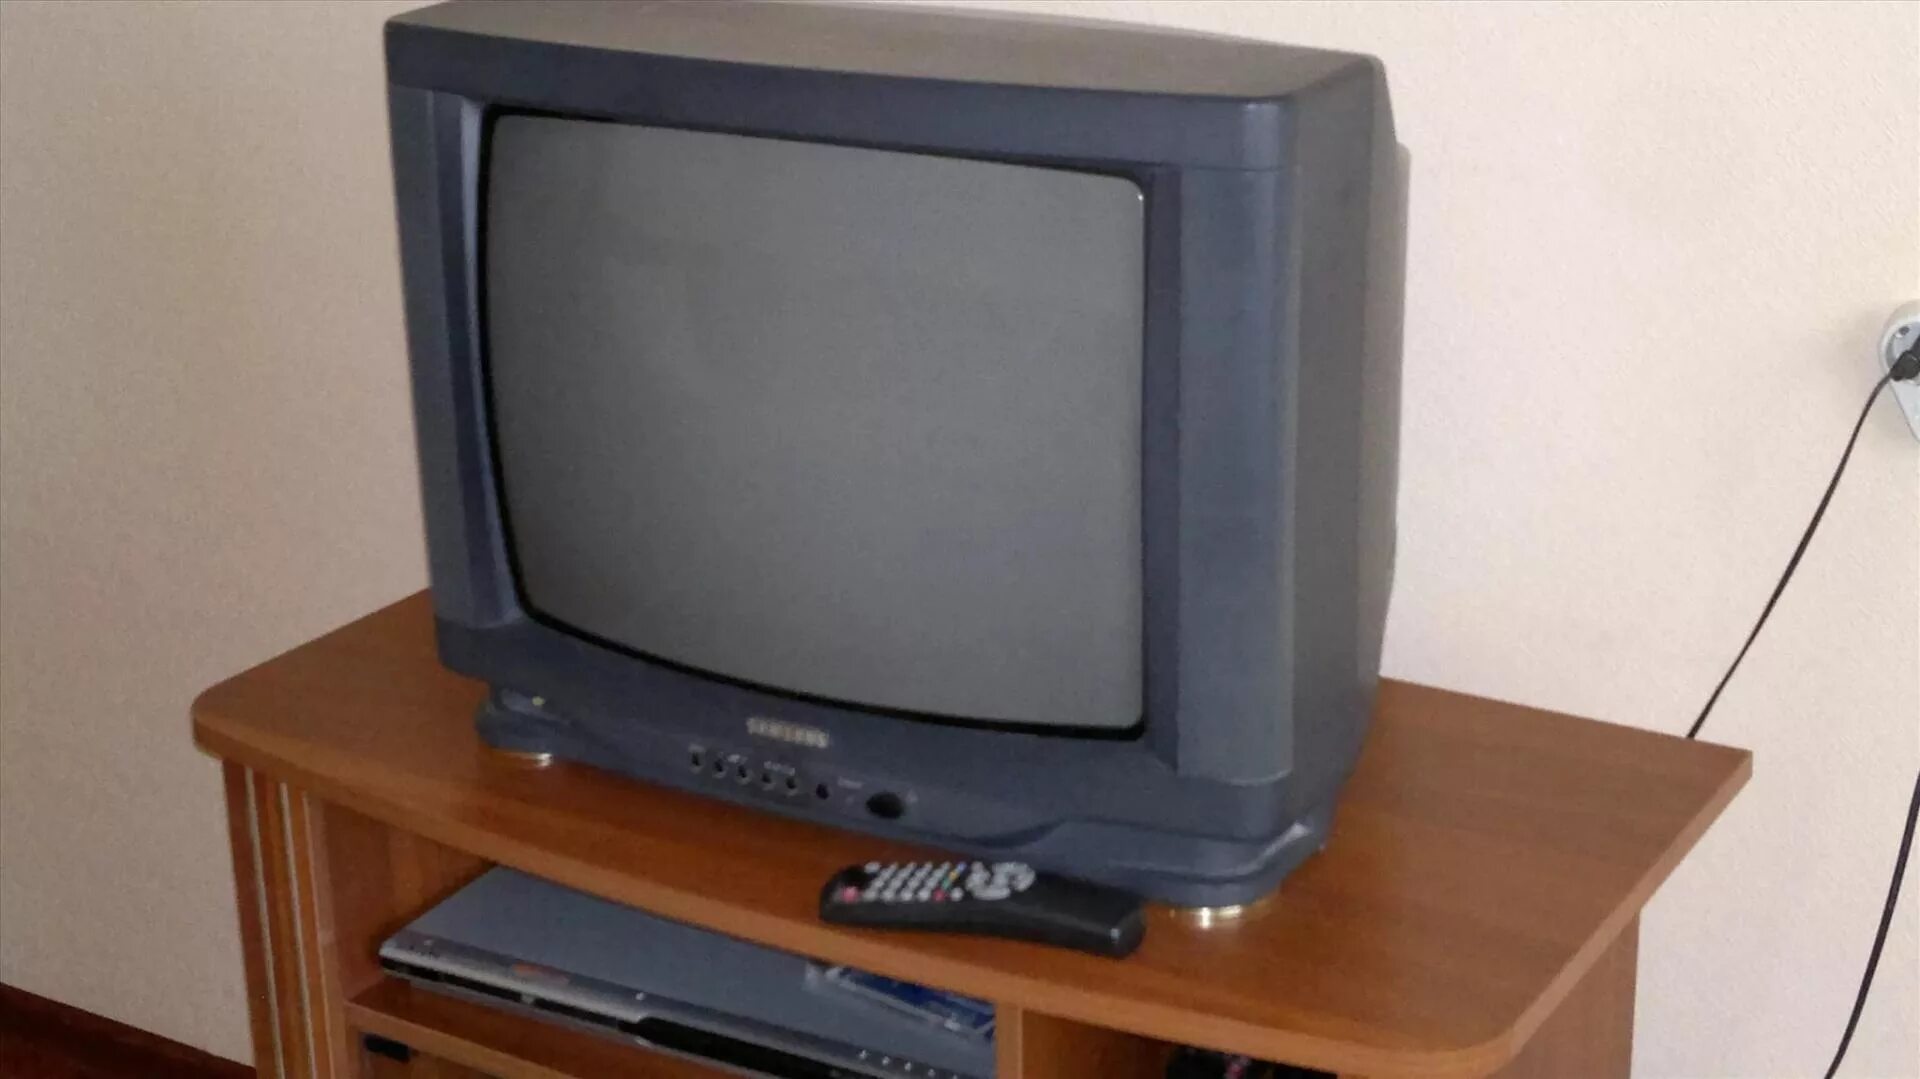 Аналоговый телевизор самсунг. Телевизор самсунг 21 ЭЛТ. Телевизор самсунг старый кинескопный. Телевизор самсунг ЭЛТ 1996. Телевизор самсунг ЭЛТ 54 см.